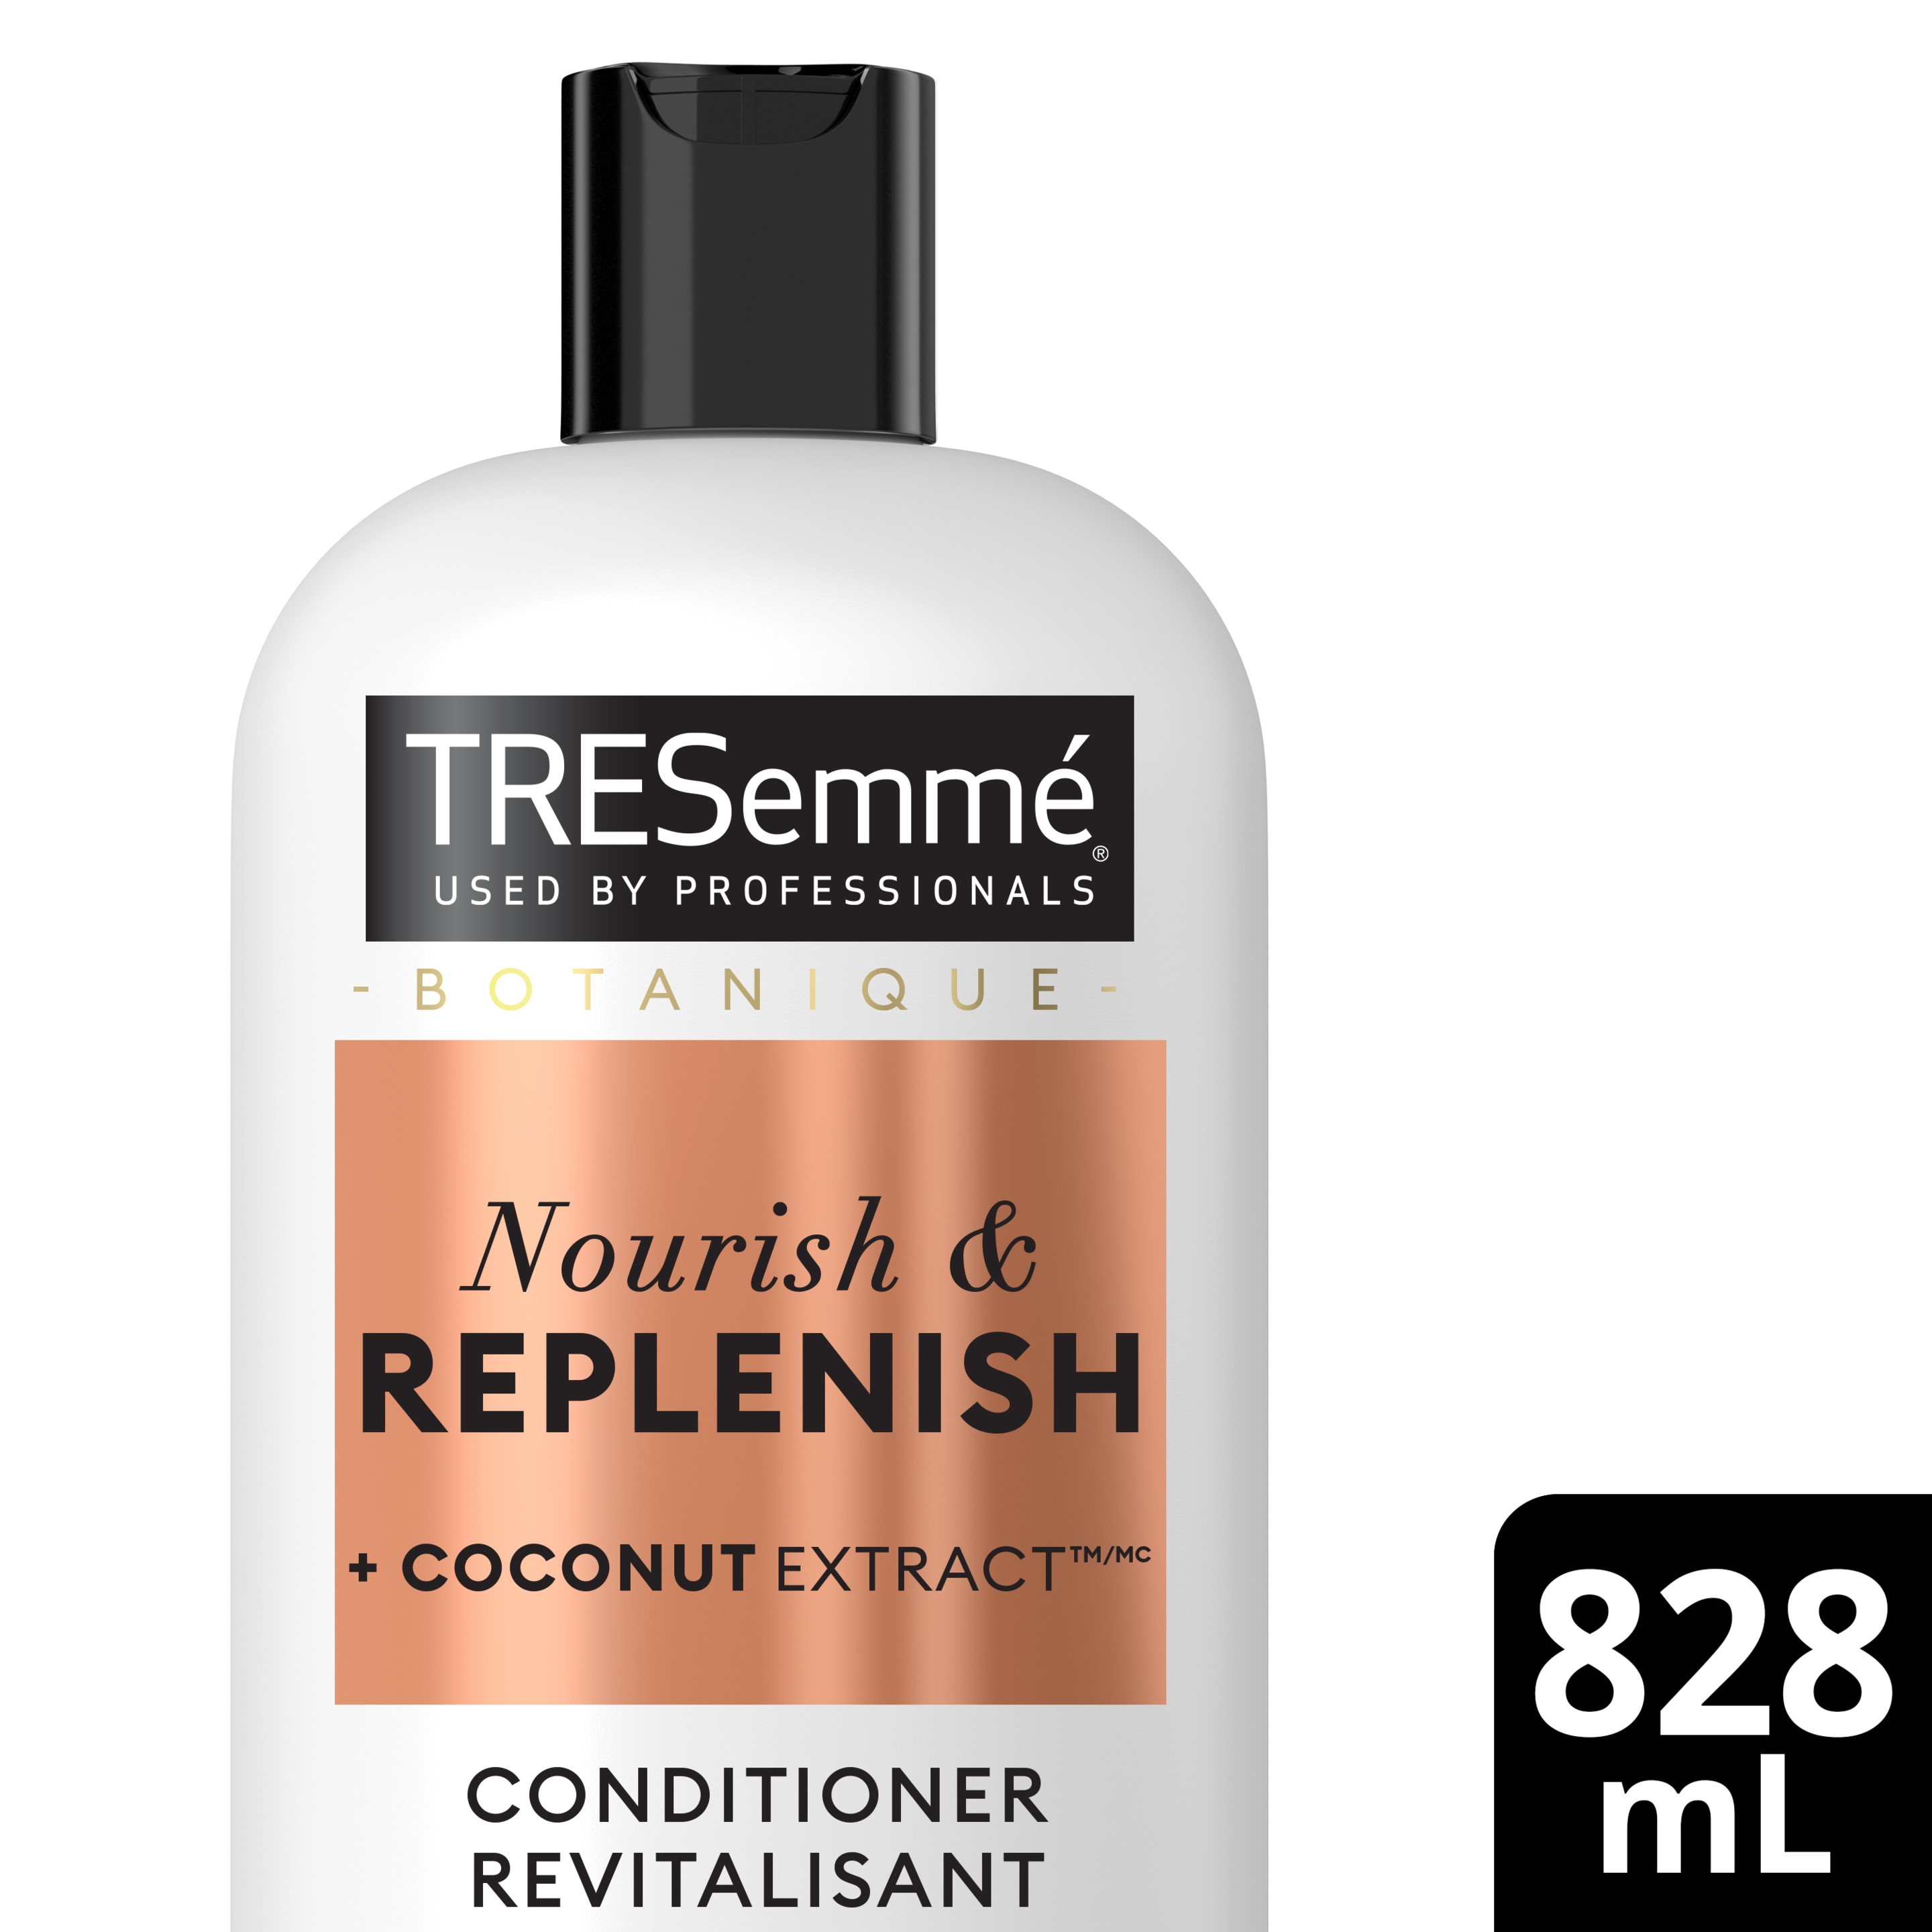 TRESemmé Botanique Nourish and Replenish Conditioner 828ml